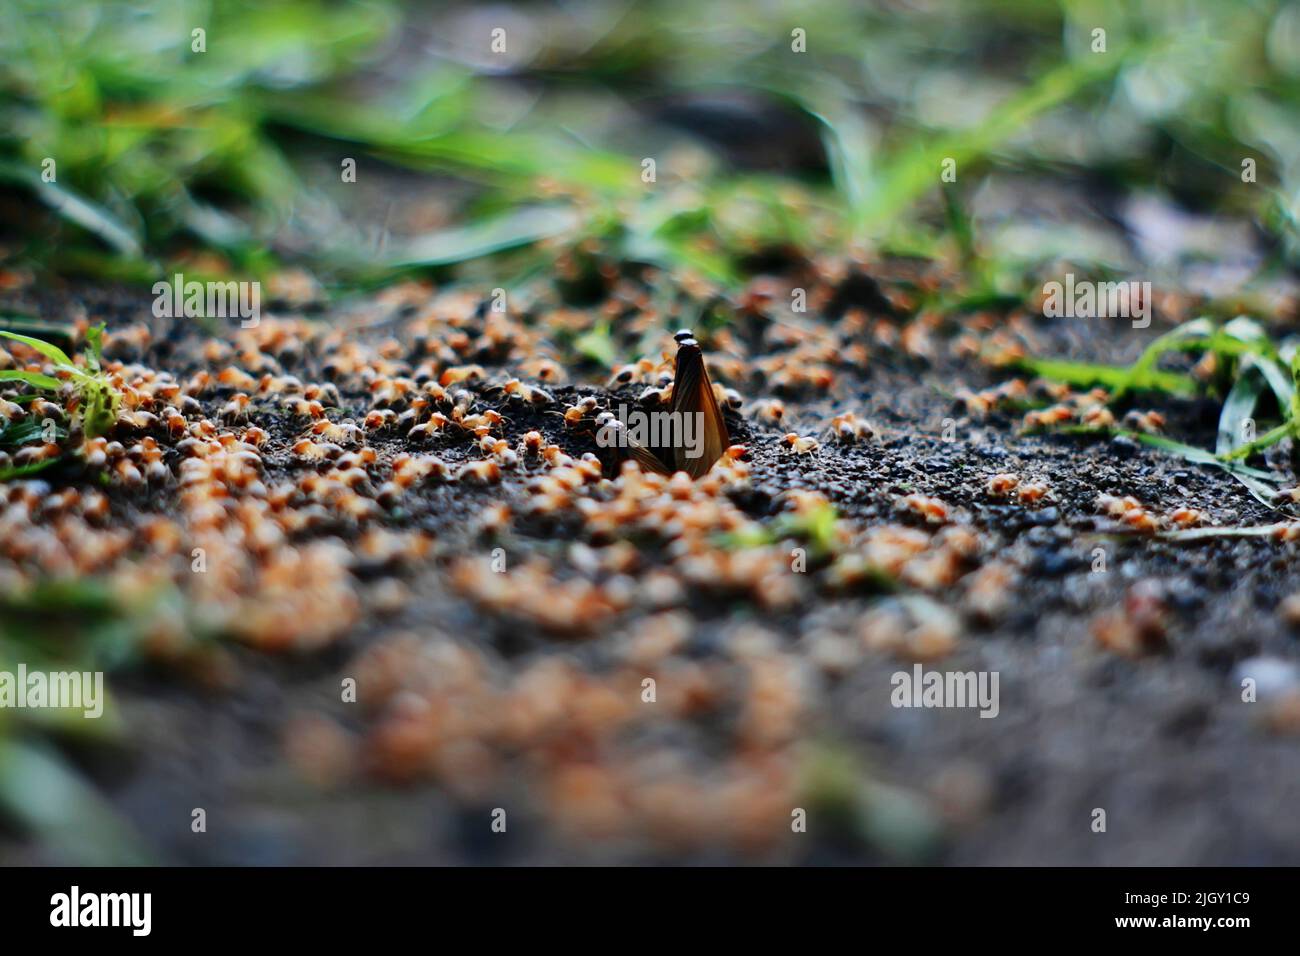 Alata insectos alados de termitas en el suelo Foto de stock